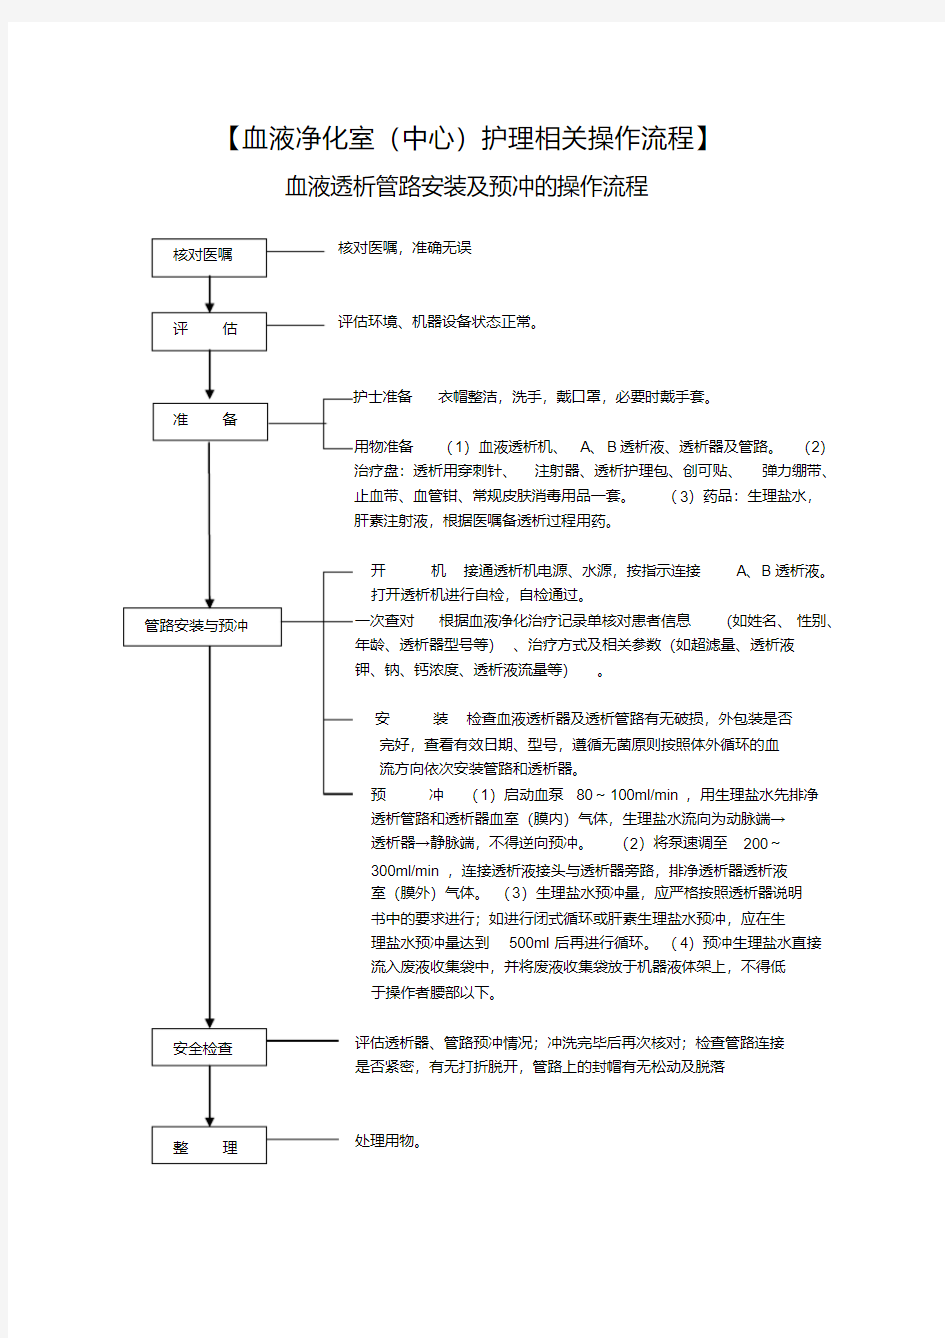 血液净化操作流程-精选.pdf